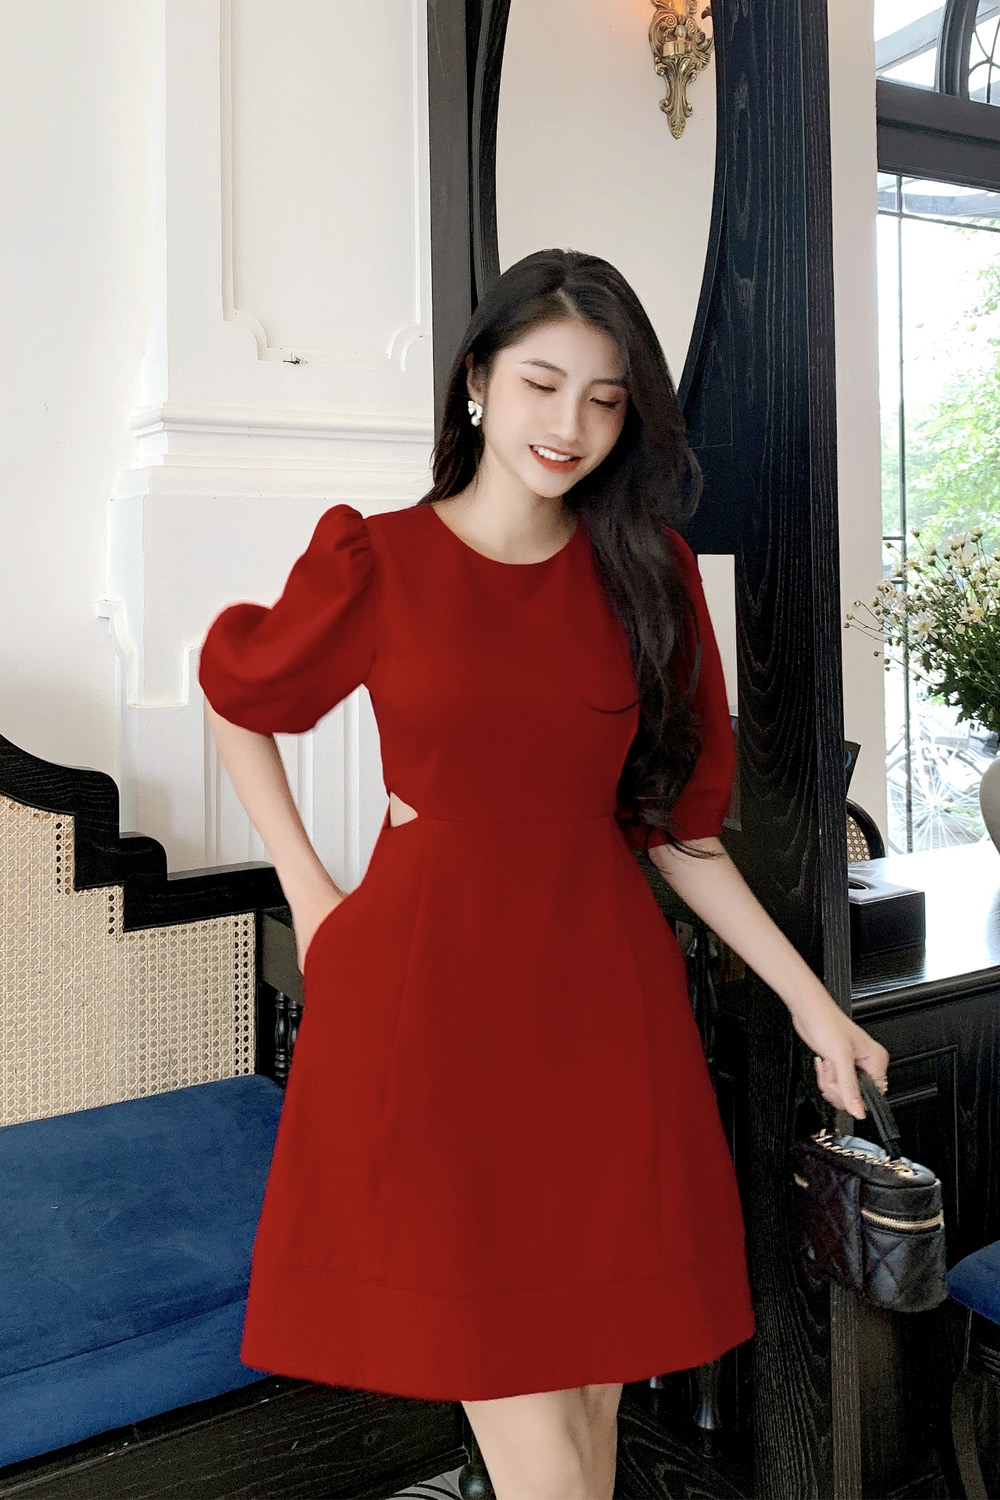 Chân Dung Người Phụ Nữ Trung Quốc Xinh Đẹp Người Phụ Nữ Châu Á Xinh Đẹp  Quyến Rũ Mặc Váy Đỏ Trung Quốc Trong Tết Nguyên Đán Cô Gái Xinh Đẹp Hấp